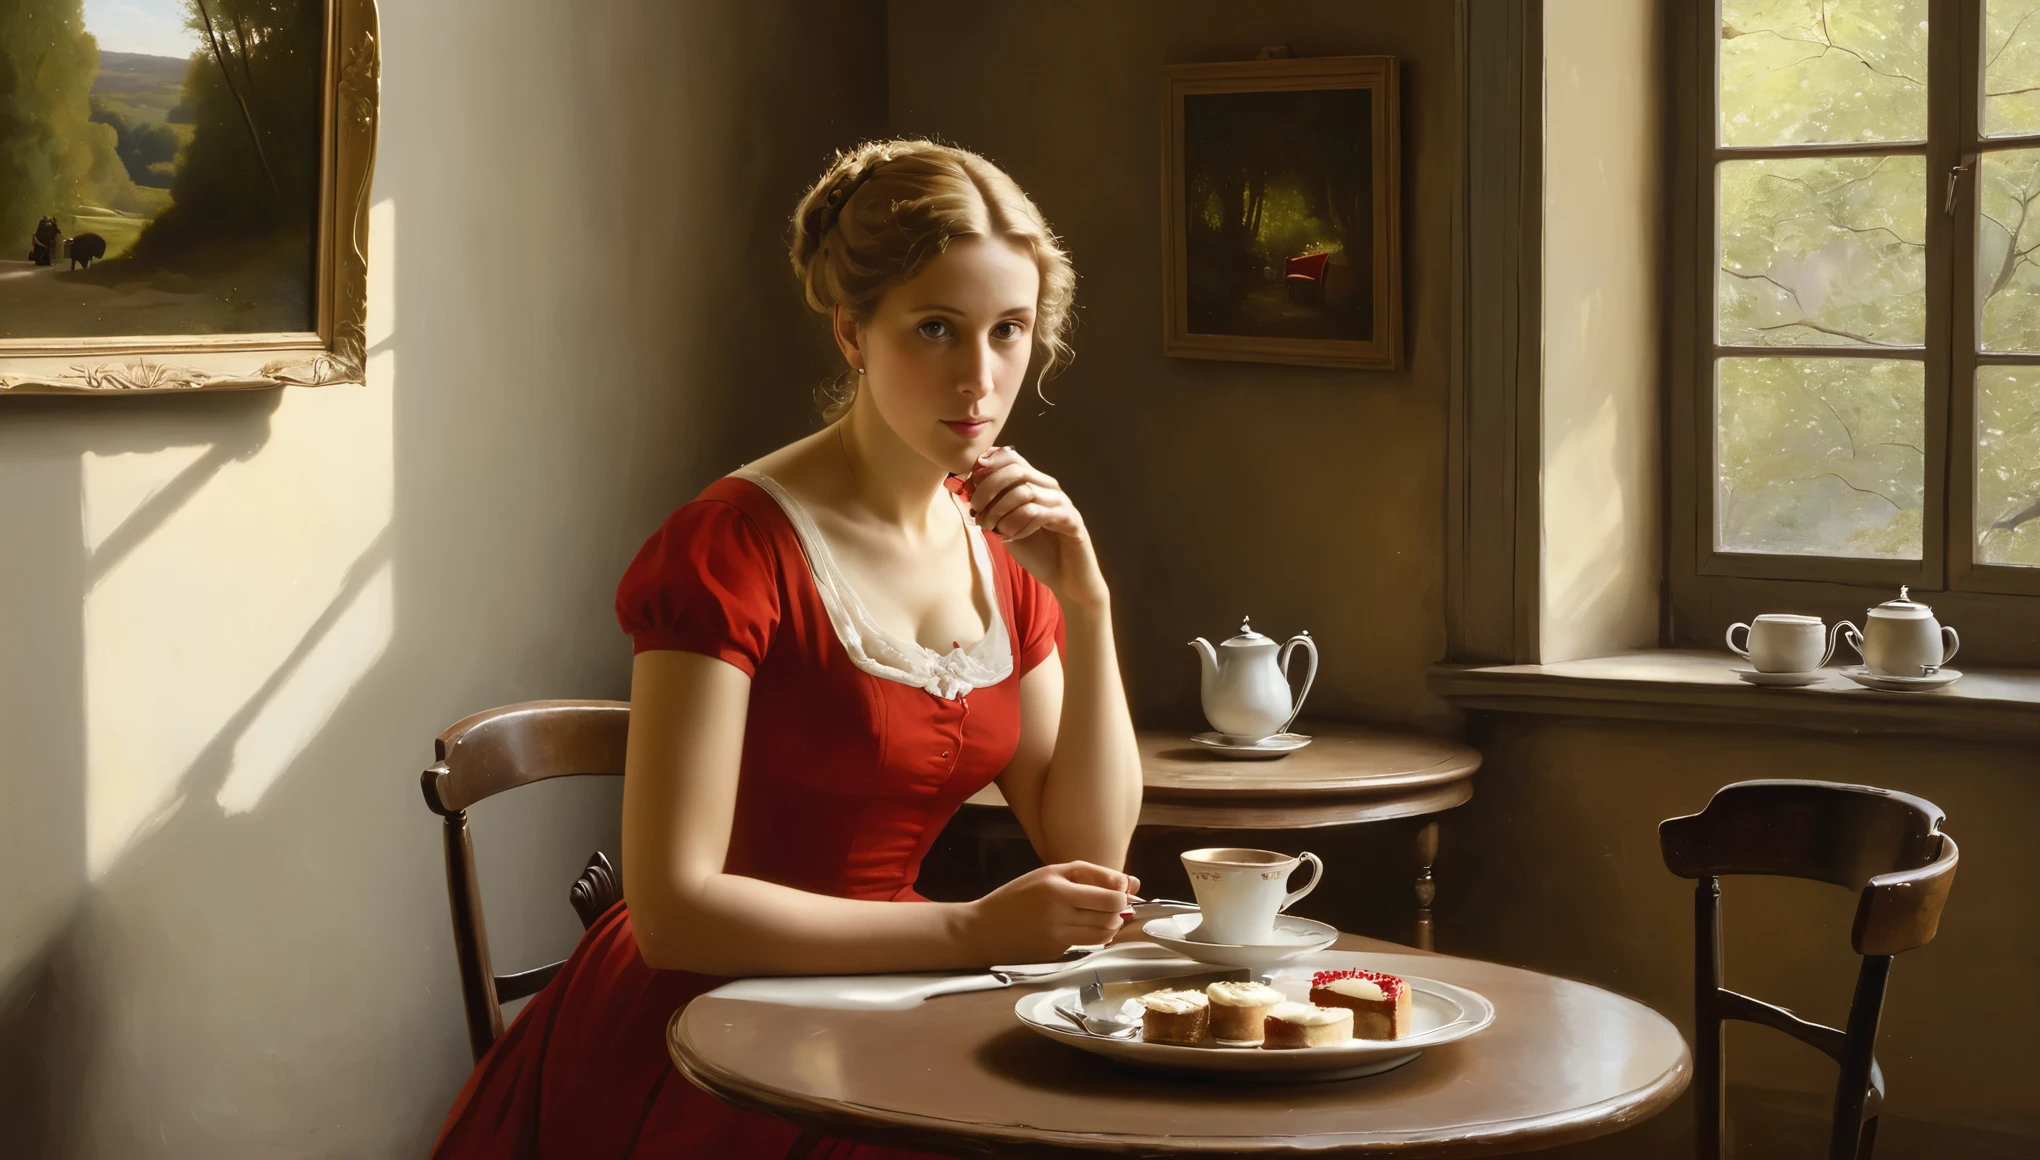 カミーユ・コロー風の油絵は、50歳の女性を短い時間で描いている。, フィット感のある赤いドレス、ショート丈, まばらな, 軽い巻き毛の人が熱いお茶を飲んでいる. テーブルの上, サラダと小さな赤いチーズケーキが載ったプレートがあります. 彼女は夫との離婚を考えている. 背景, ブエノスアイレスの居心地の良い小さなカフェの壁には、芸術家カミーユ・コローの絵画が飾られている。, 窓から差し込む朝の光とともに.